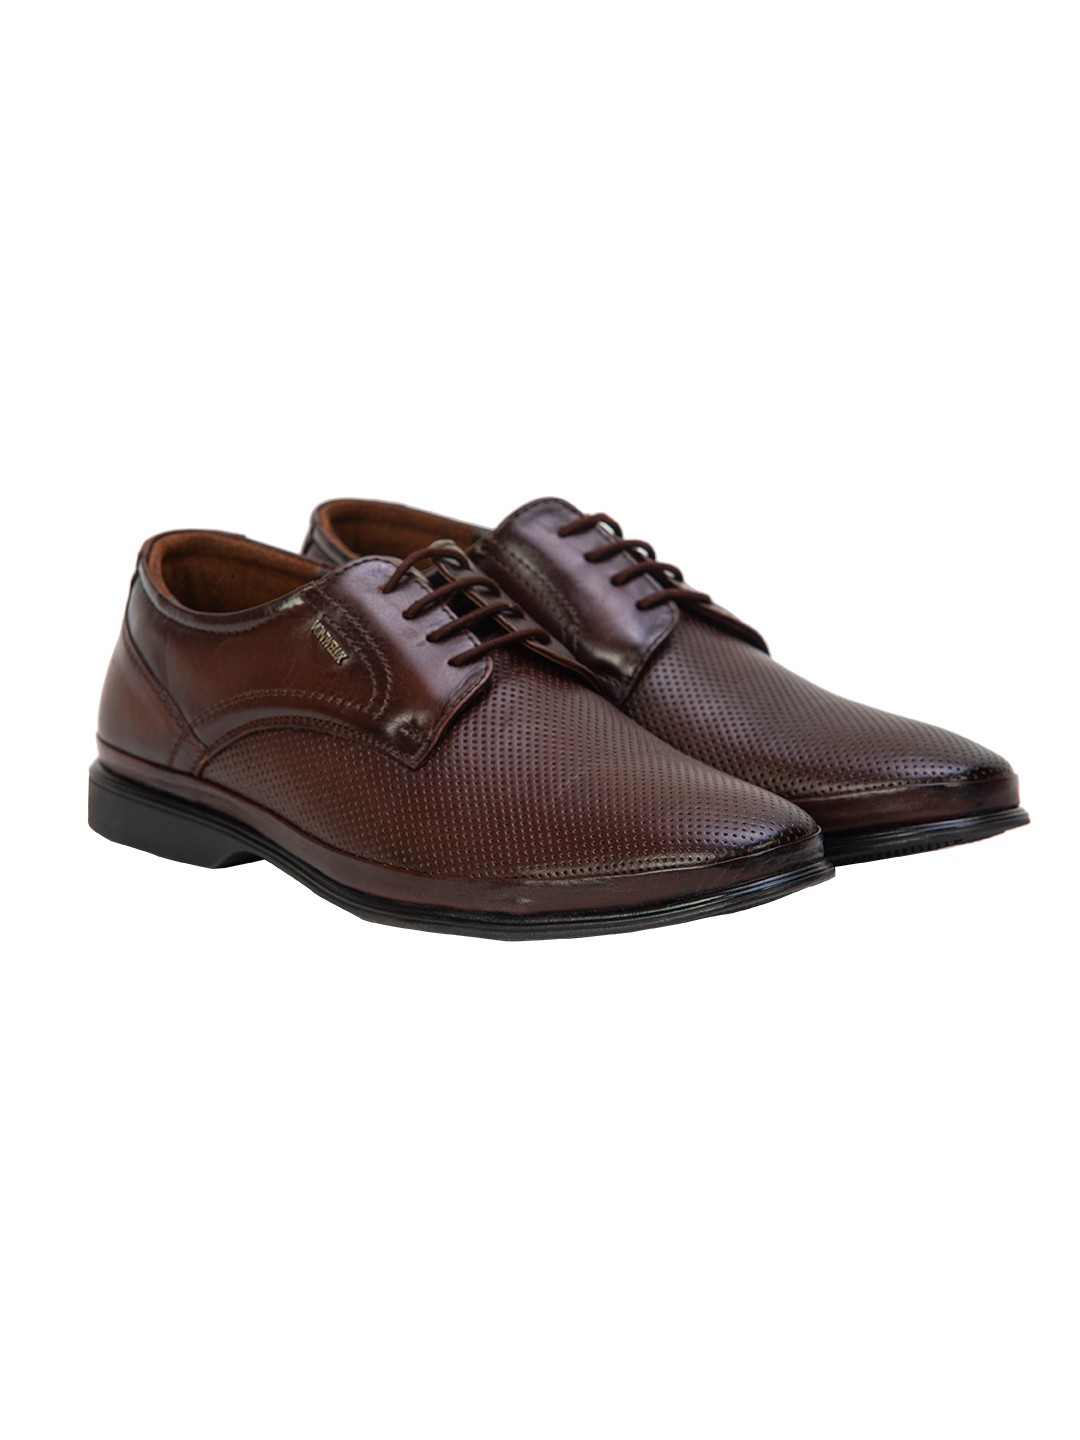 Buy Von Wellx Germany Comfort Coen Brown Shoes Online in Rajkot